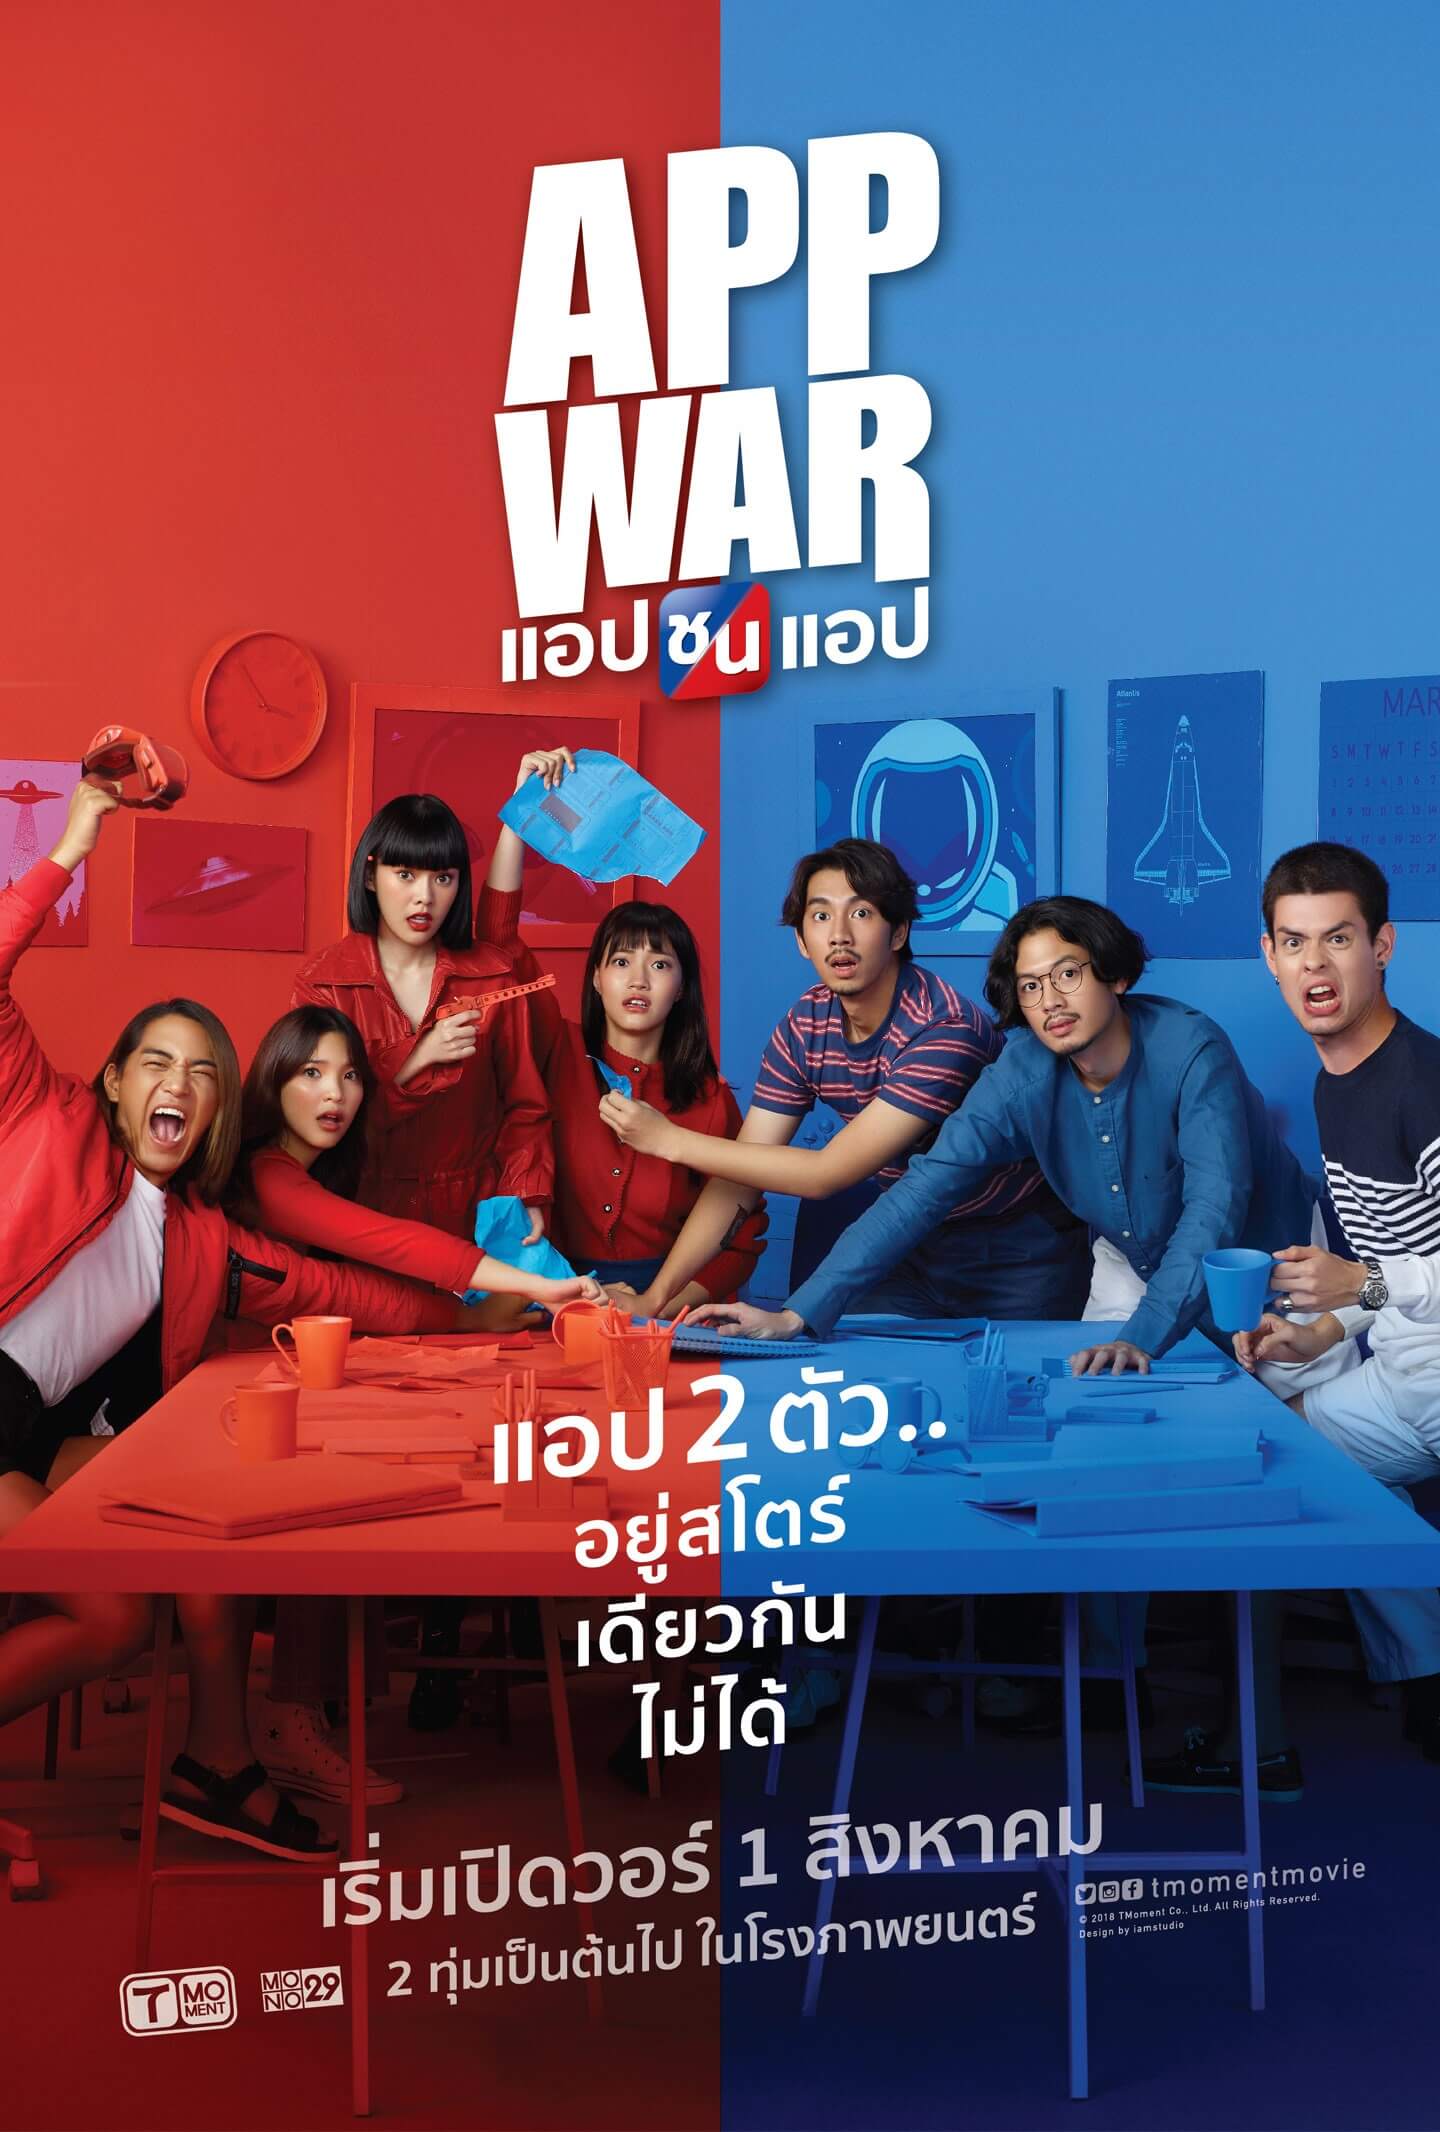 App War Poster